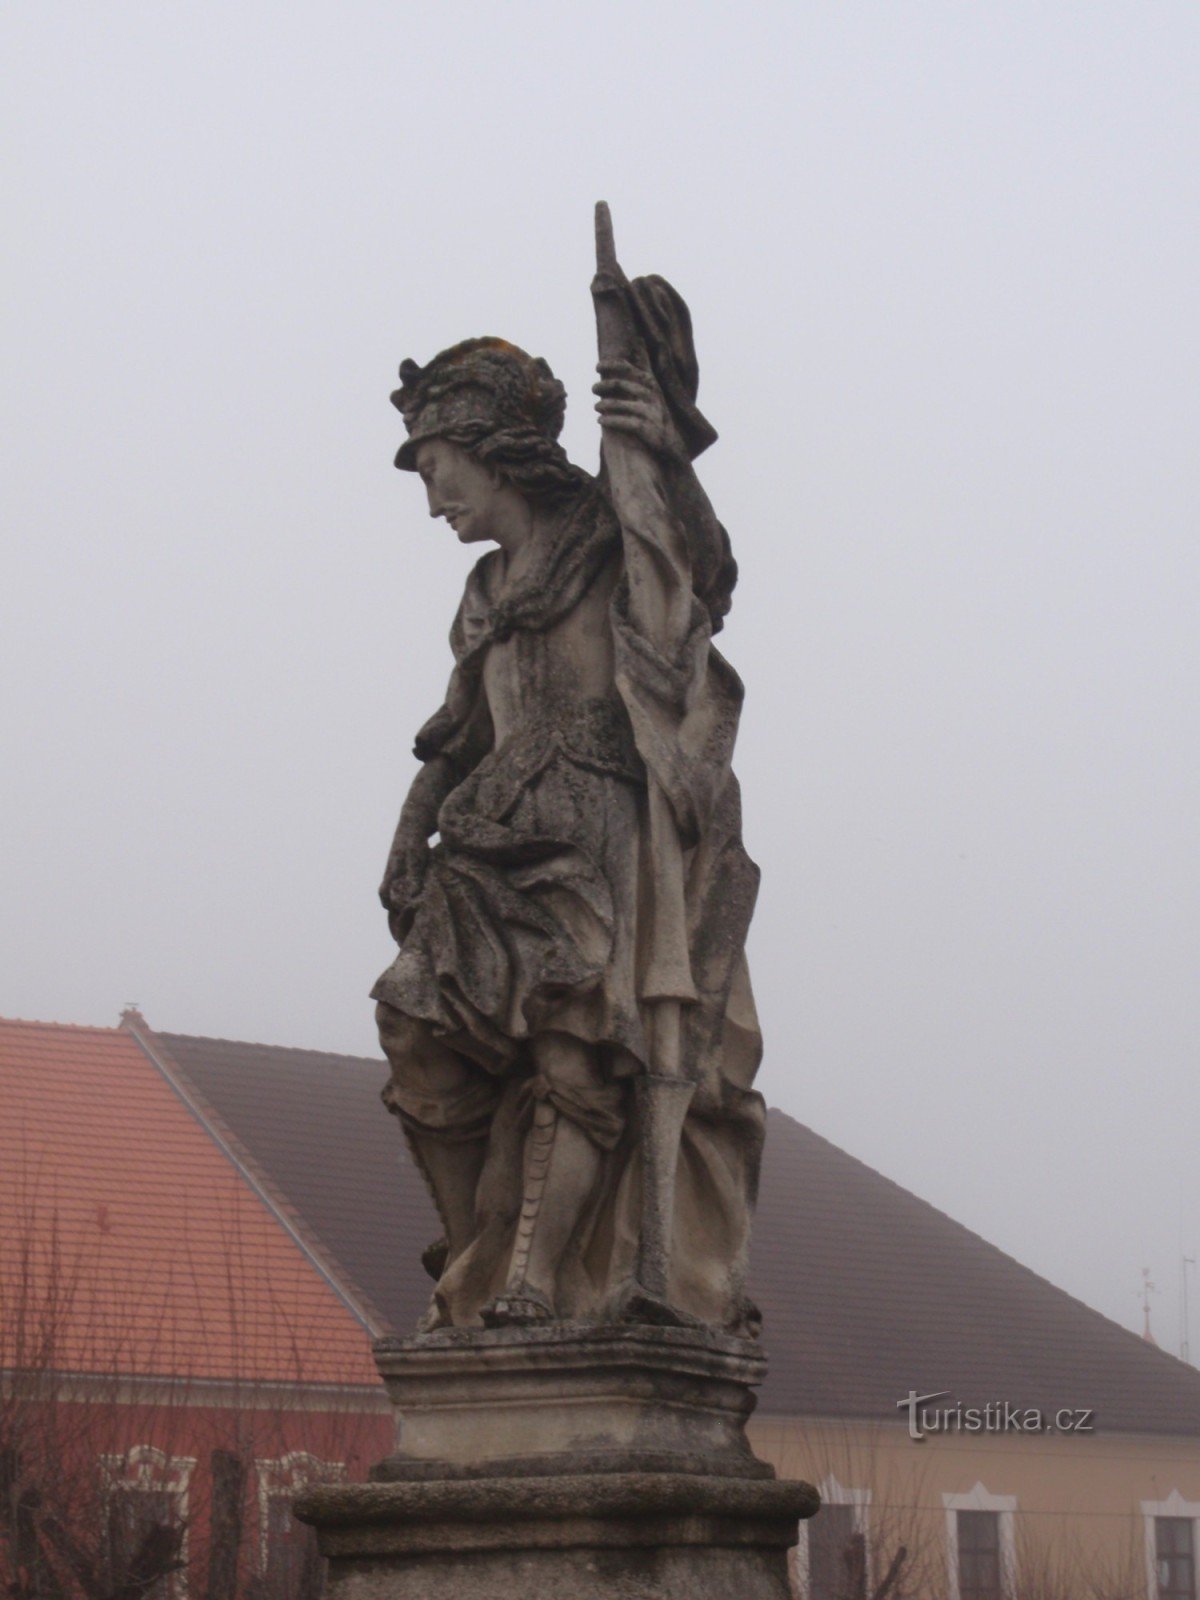 Decorarea sculpturala a podului din fata primariei din Brtnice langa Jihlava